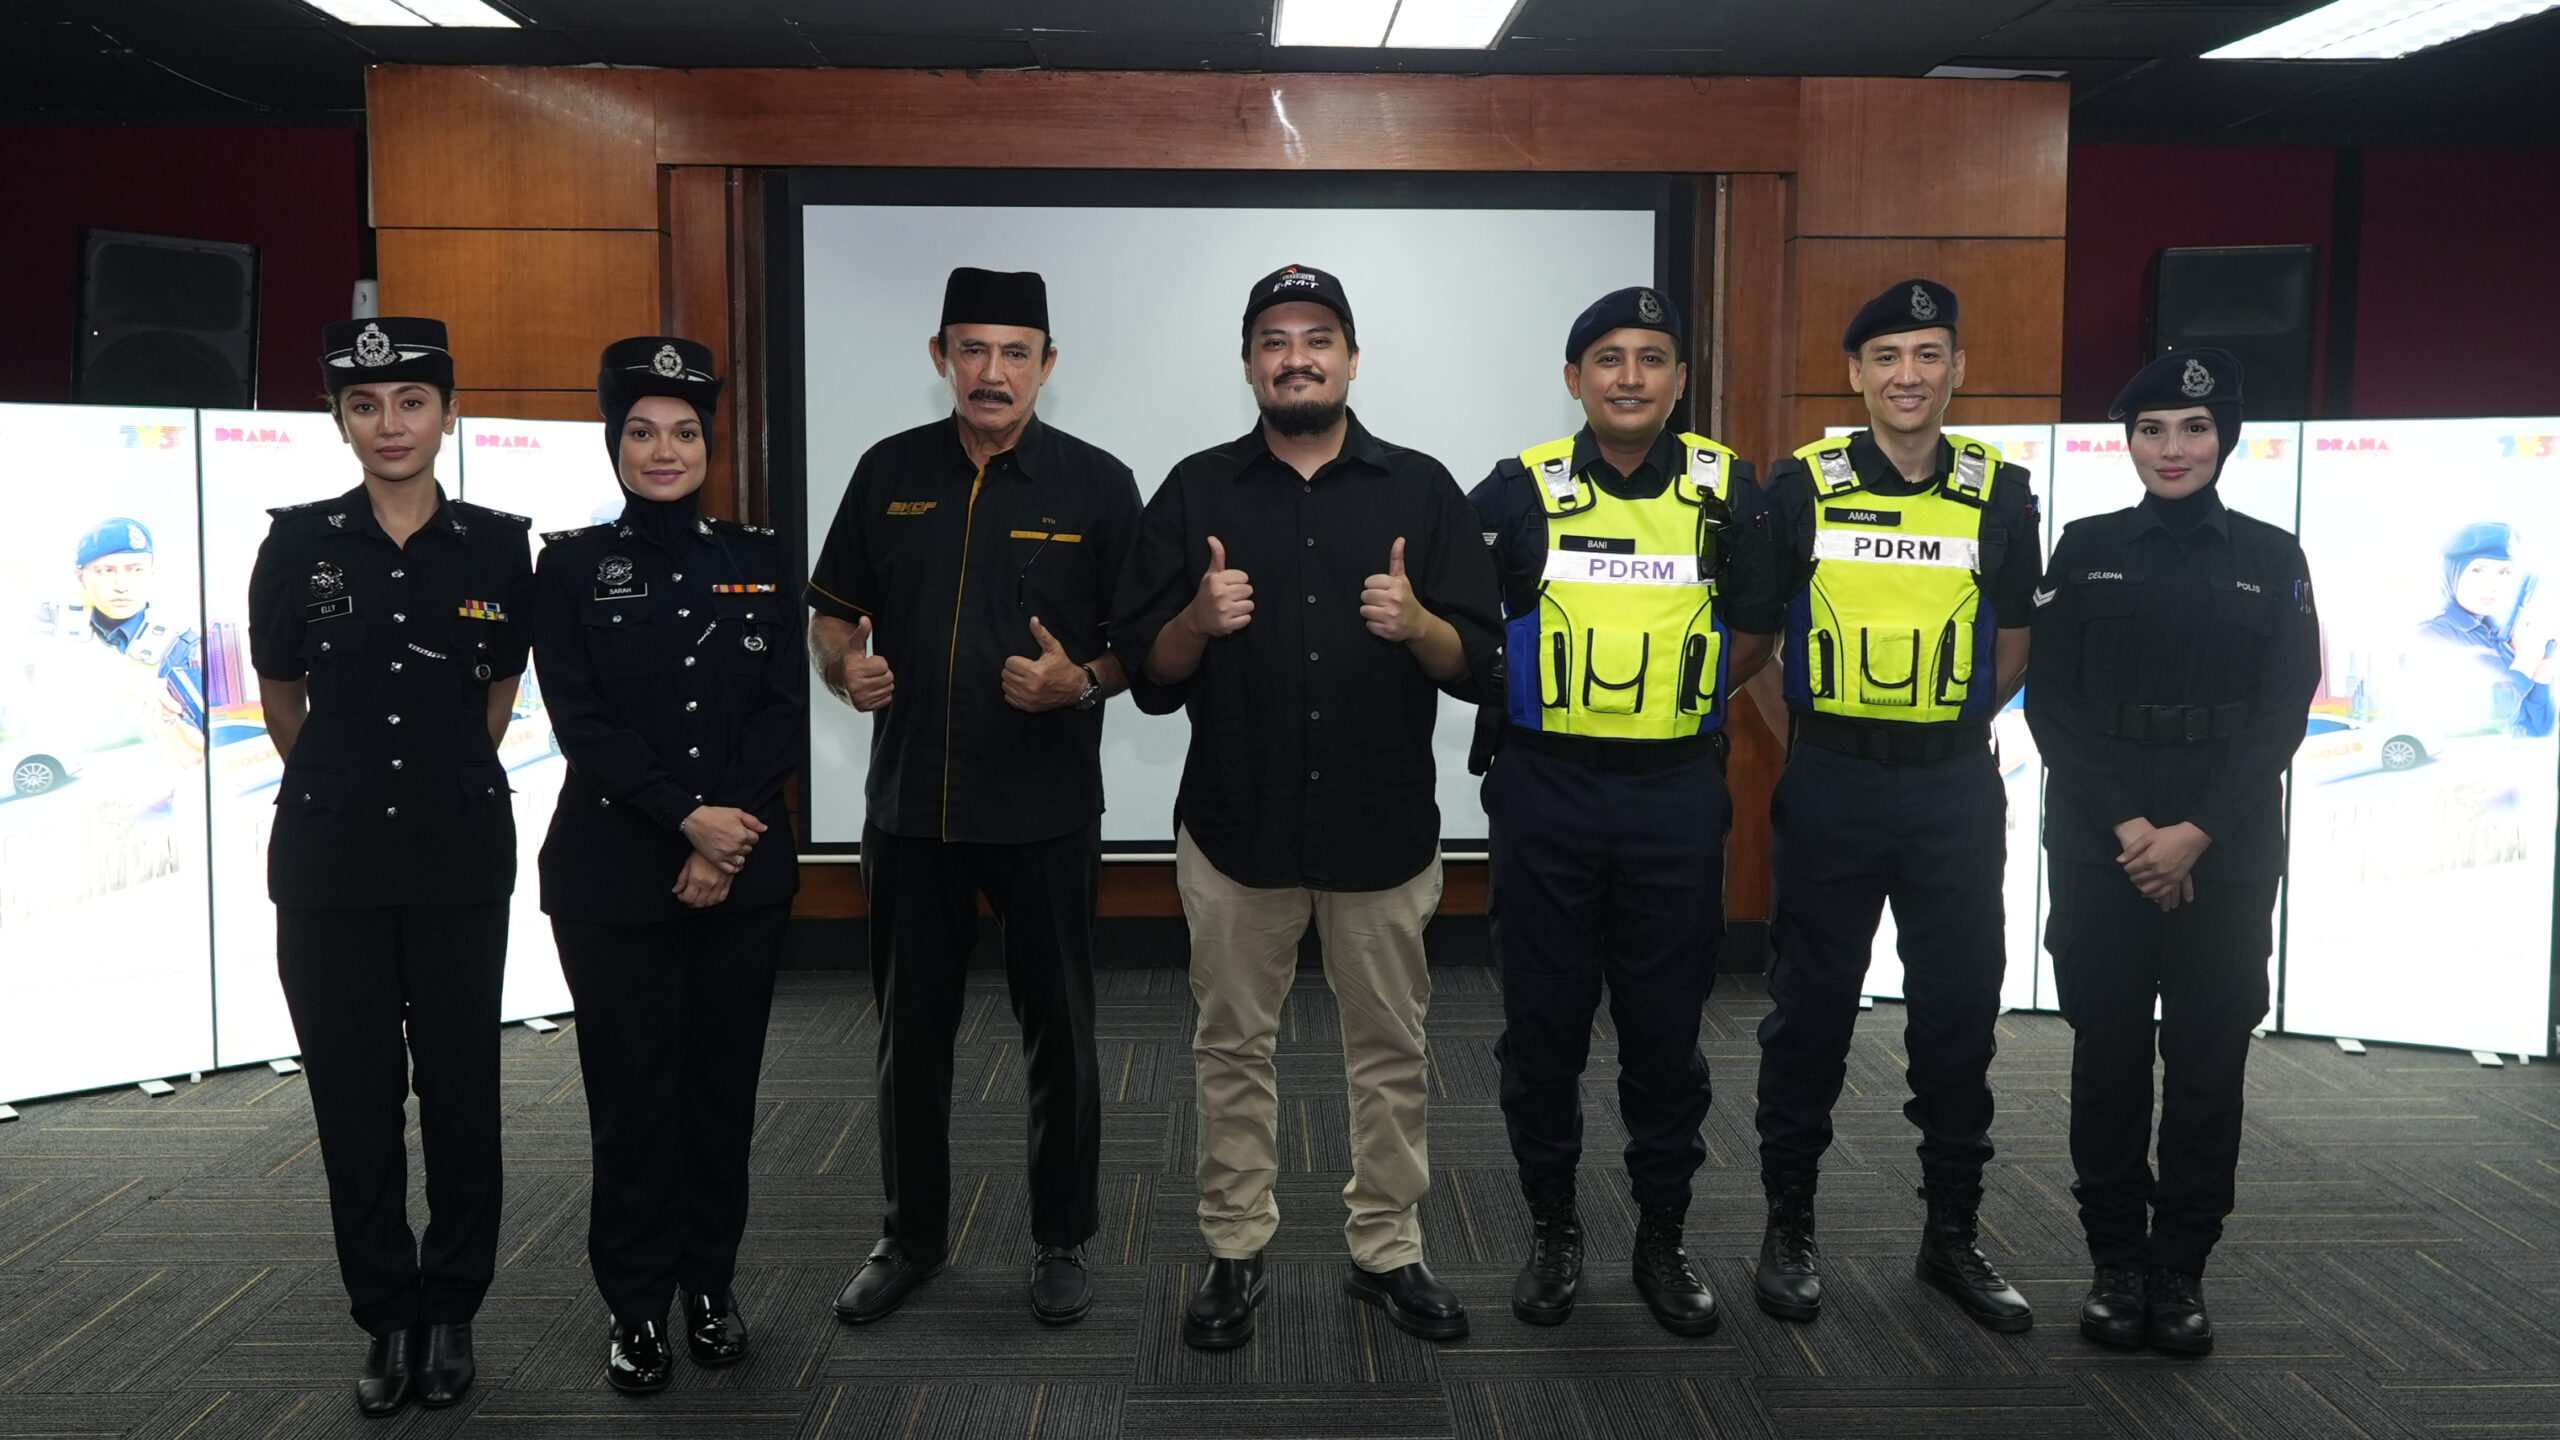 Kembali mengarah drama kepolisian baharu, Yusof Haslam pilih Shah Iskandar, Puteri Sarah terajui Polis Peronda